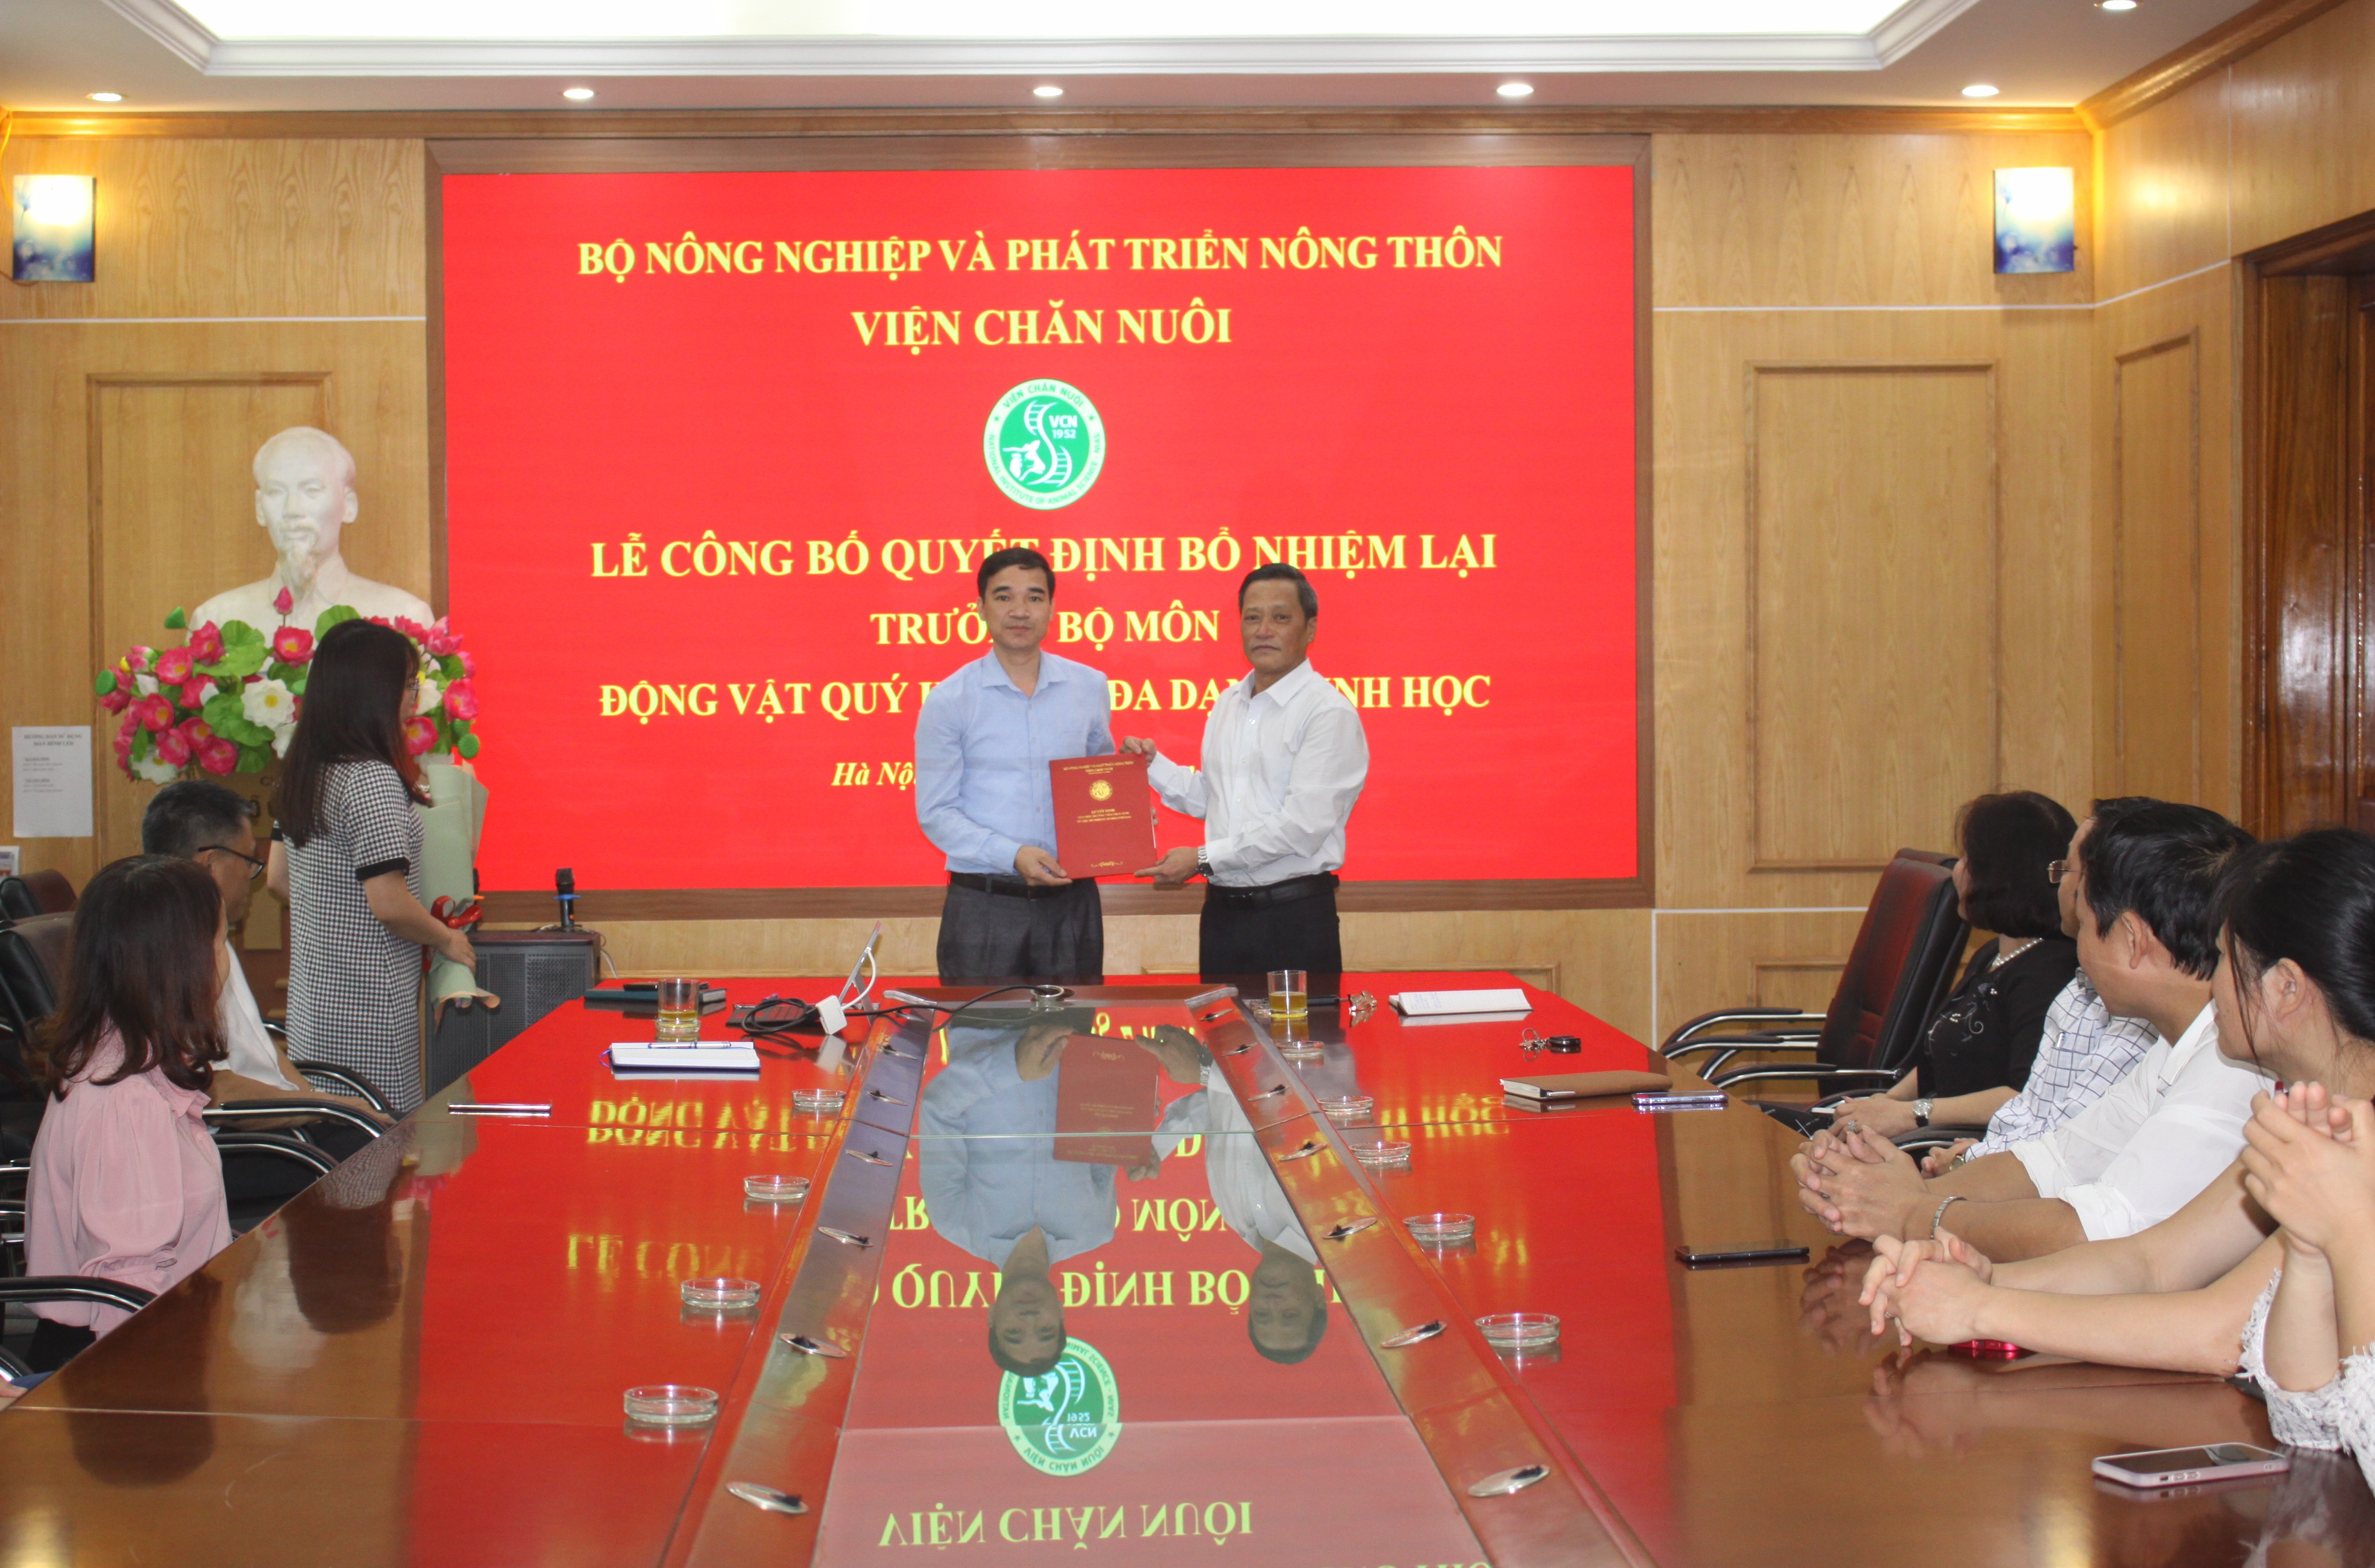 Lễ công bố và trao quyết định bổ nhiệm lại viên chức lãnh đạo cho TS. Nguyễn Công Định